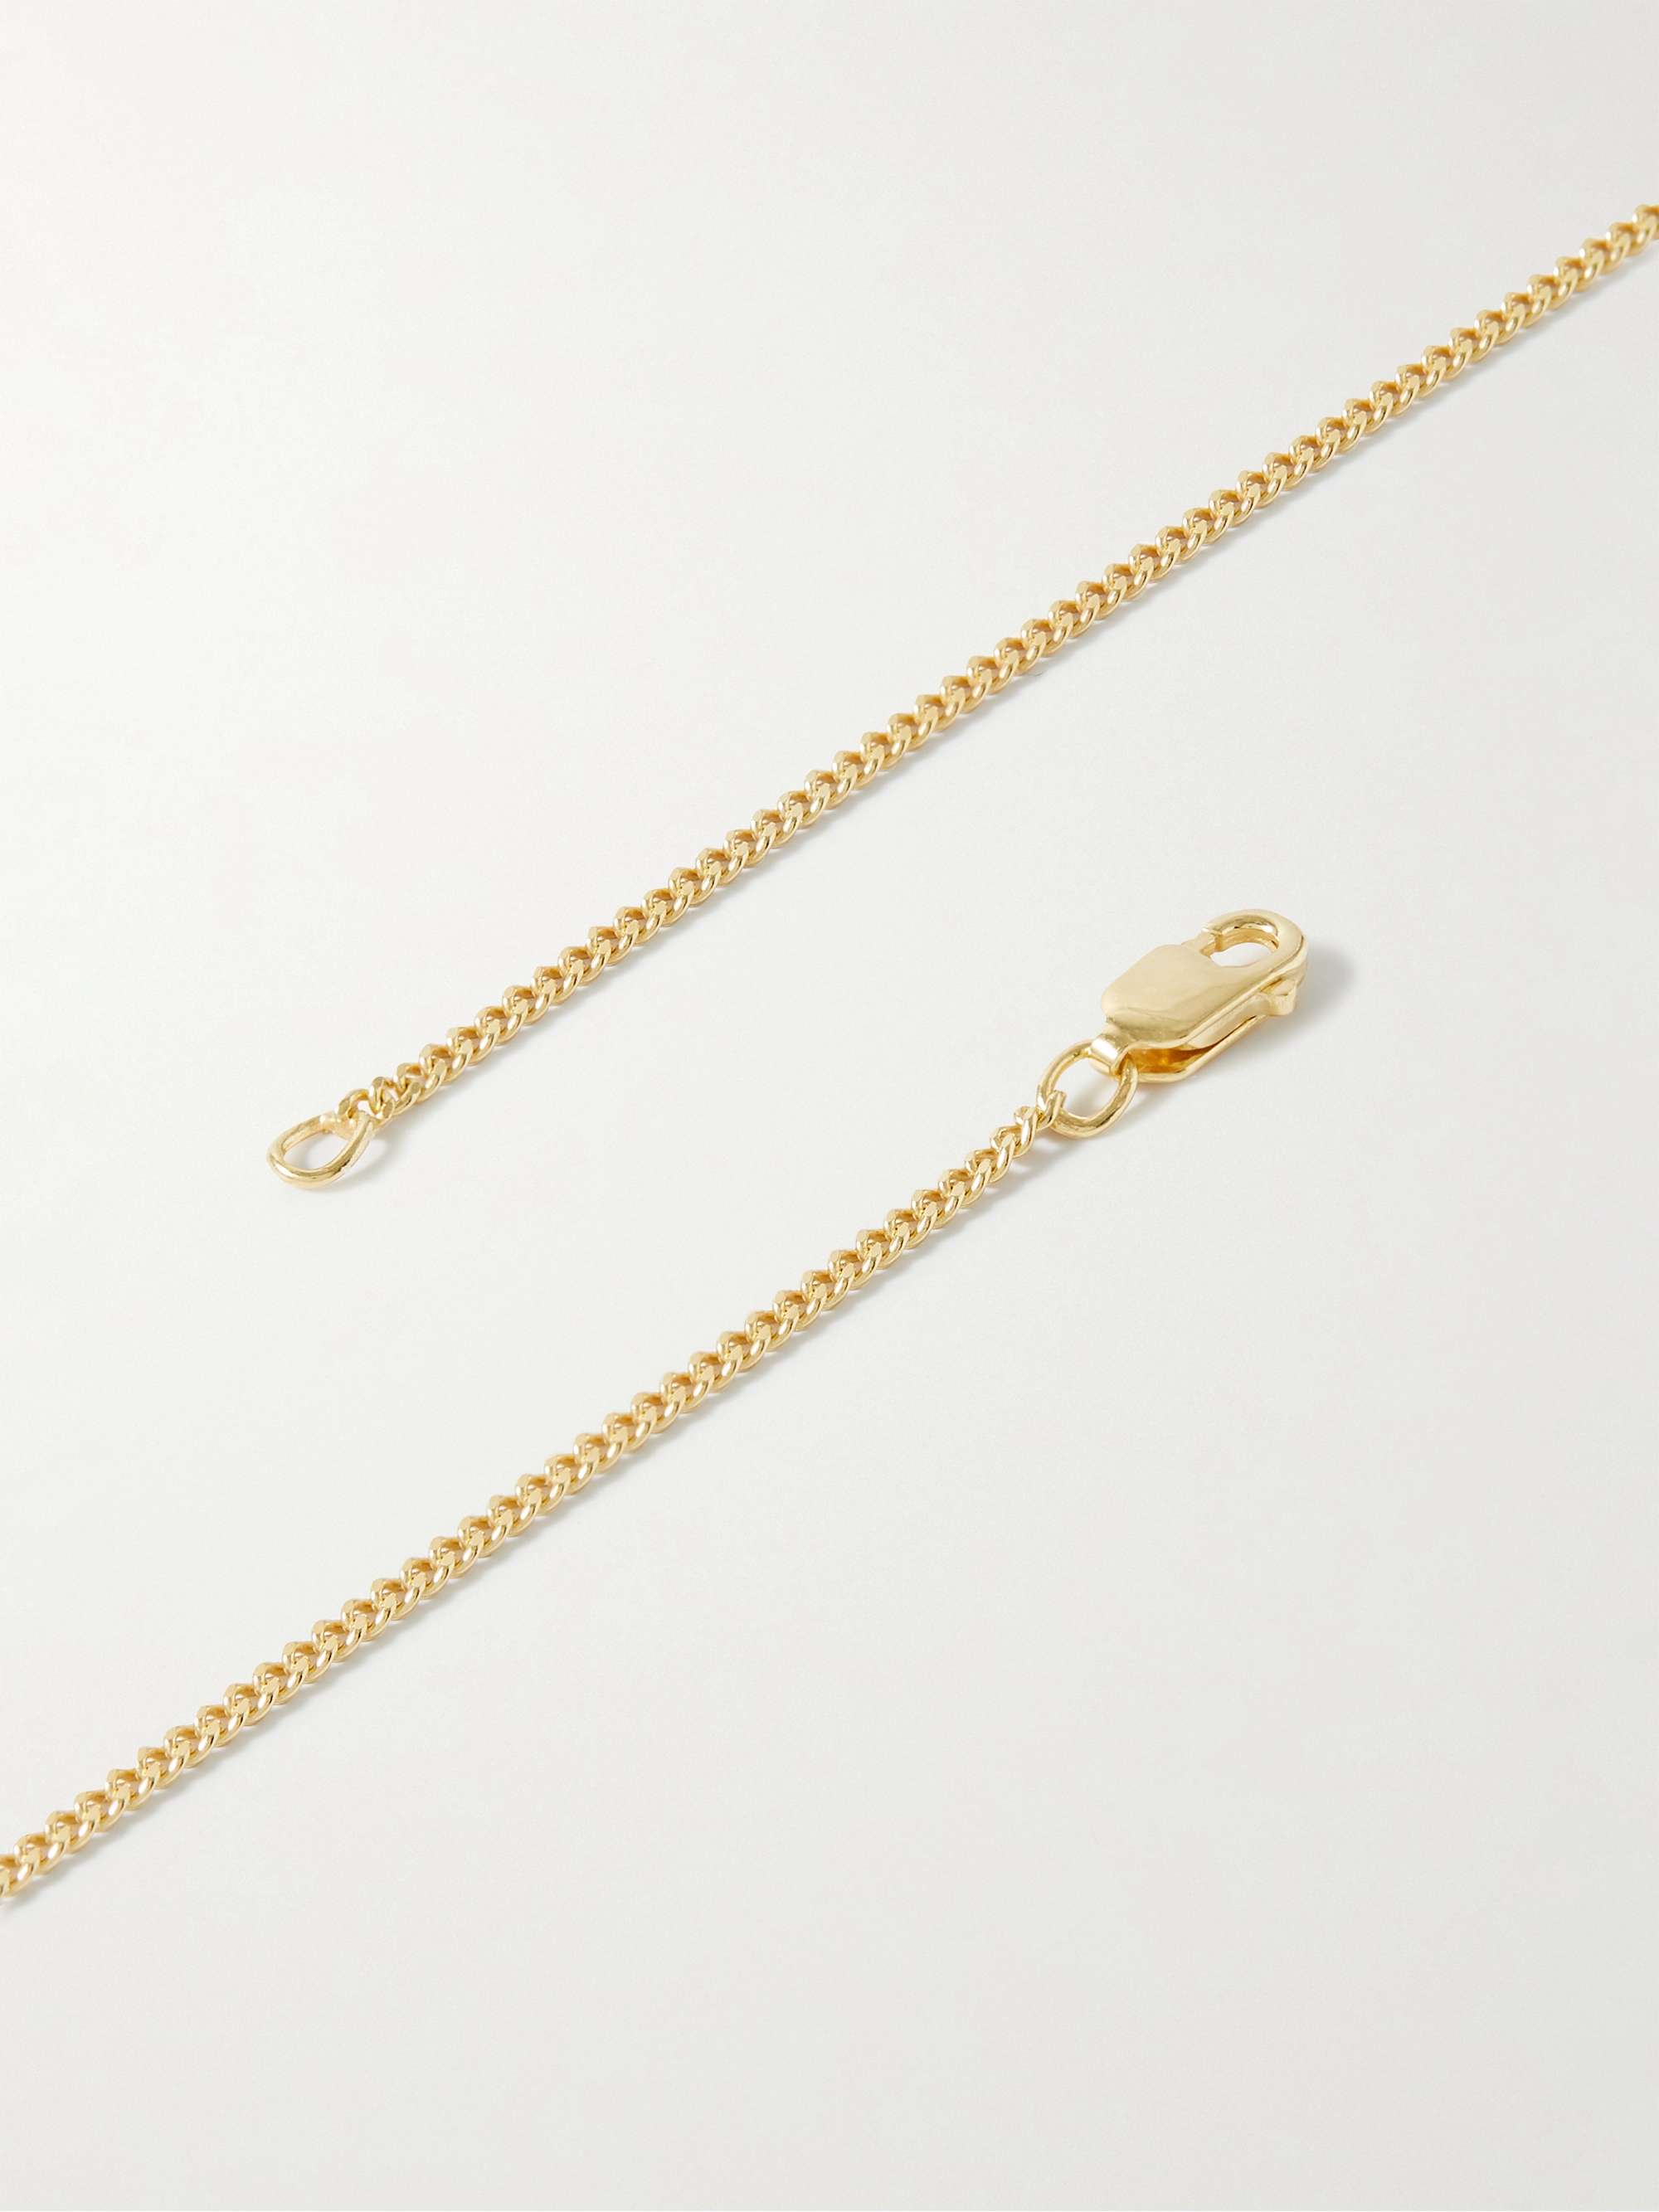 MIANSAI Umbra Gold Vermeil, Enamel and Sapphire Necklace